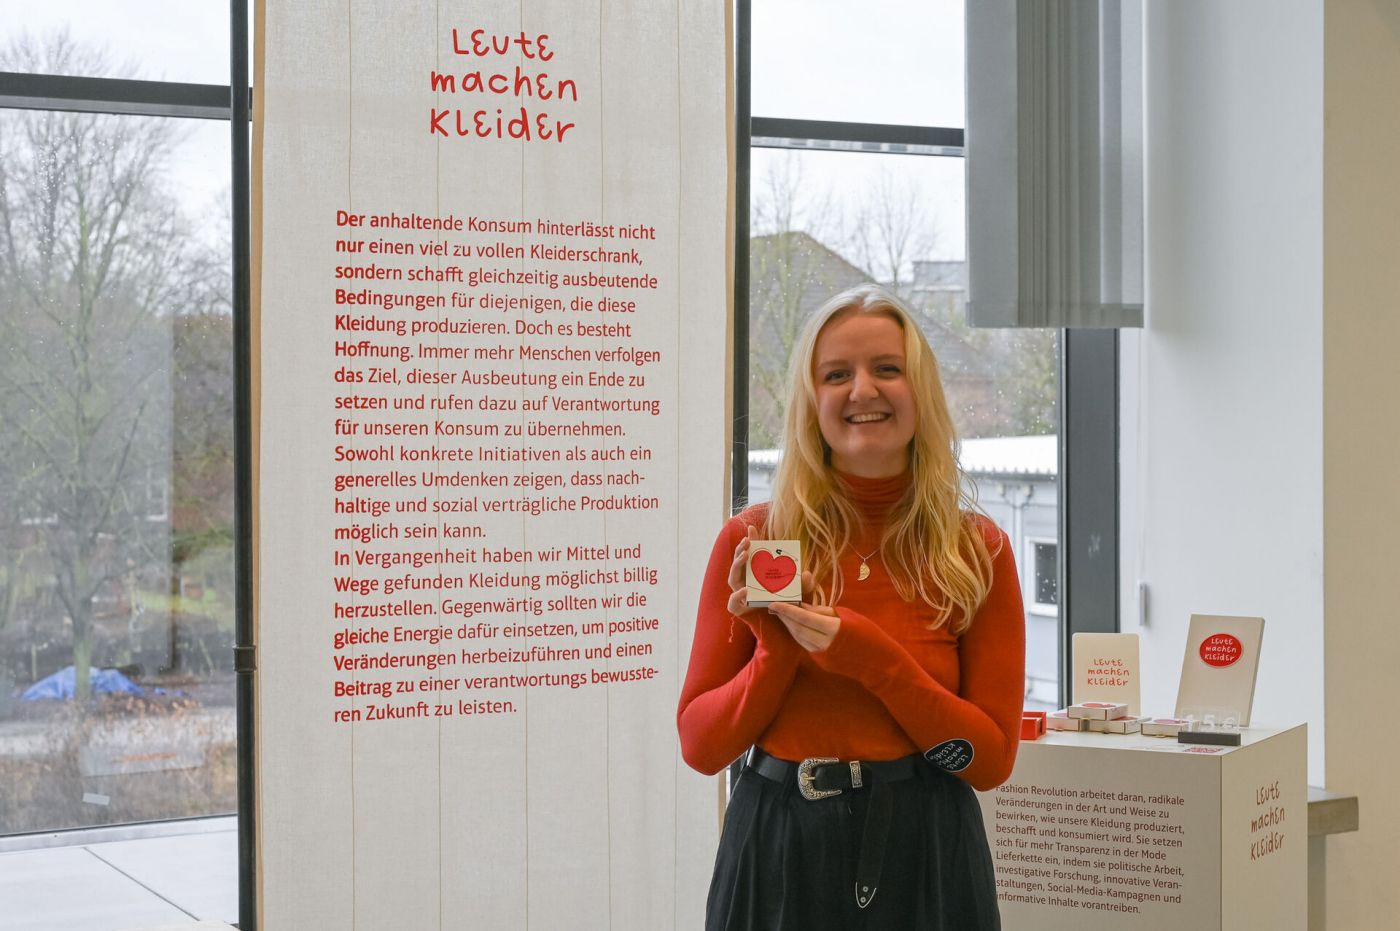  Eine Frau zeigt an einem Ausstellungsstand eine Karte, auf der in einem Herz die Worte "Leute machen Kleider" zu lesen sind.